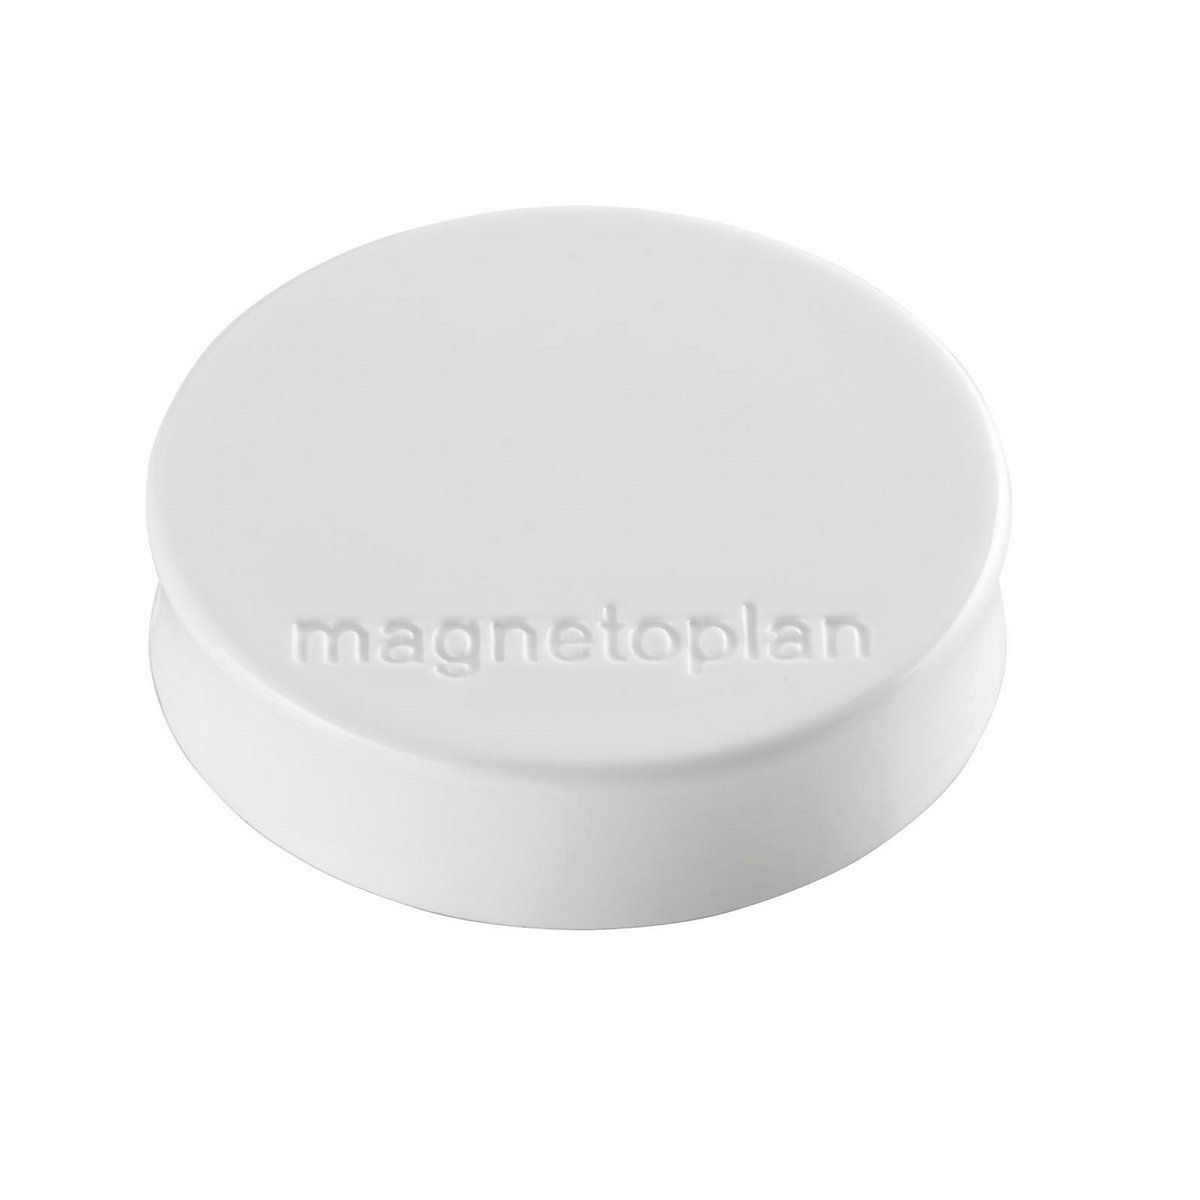 magnetoplan – Plot magnétique Ergo, Ø 30 mm, lot de 60, blanc